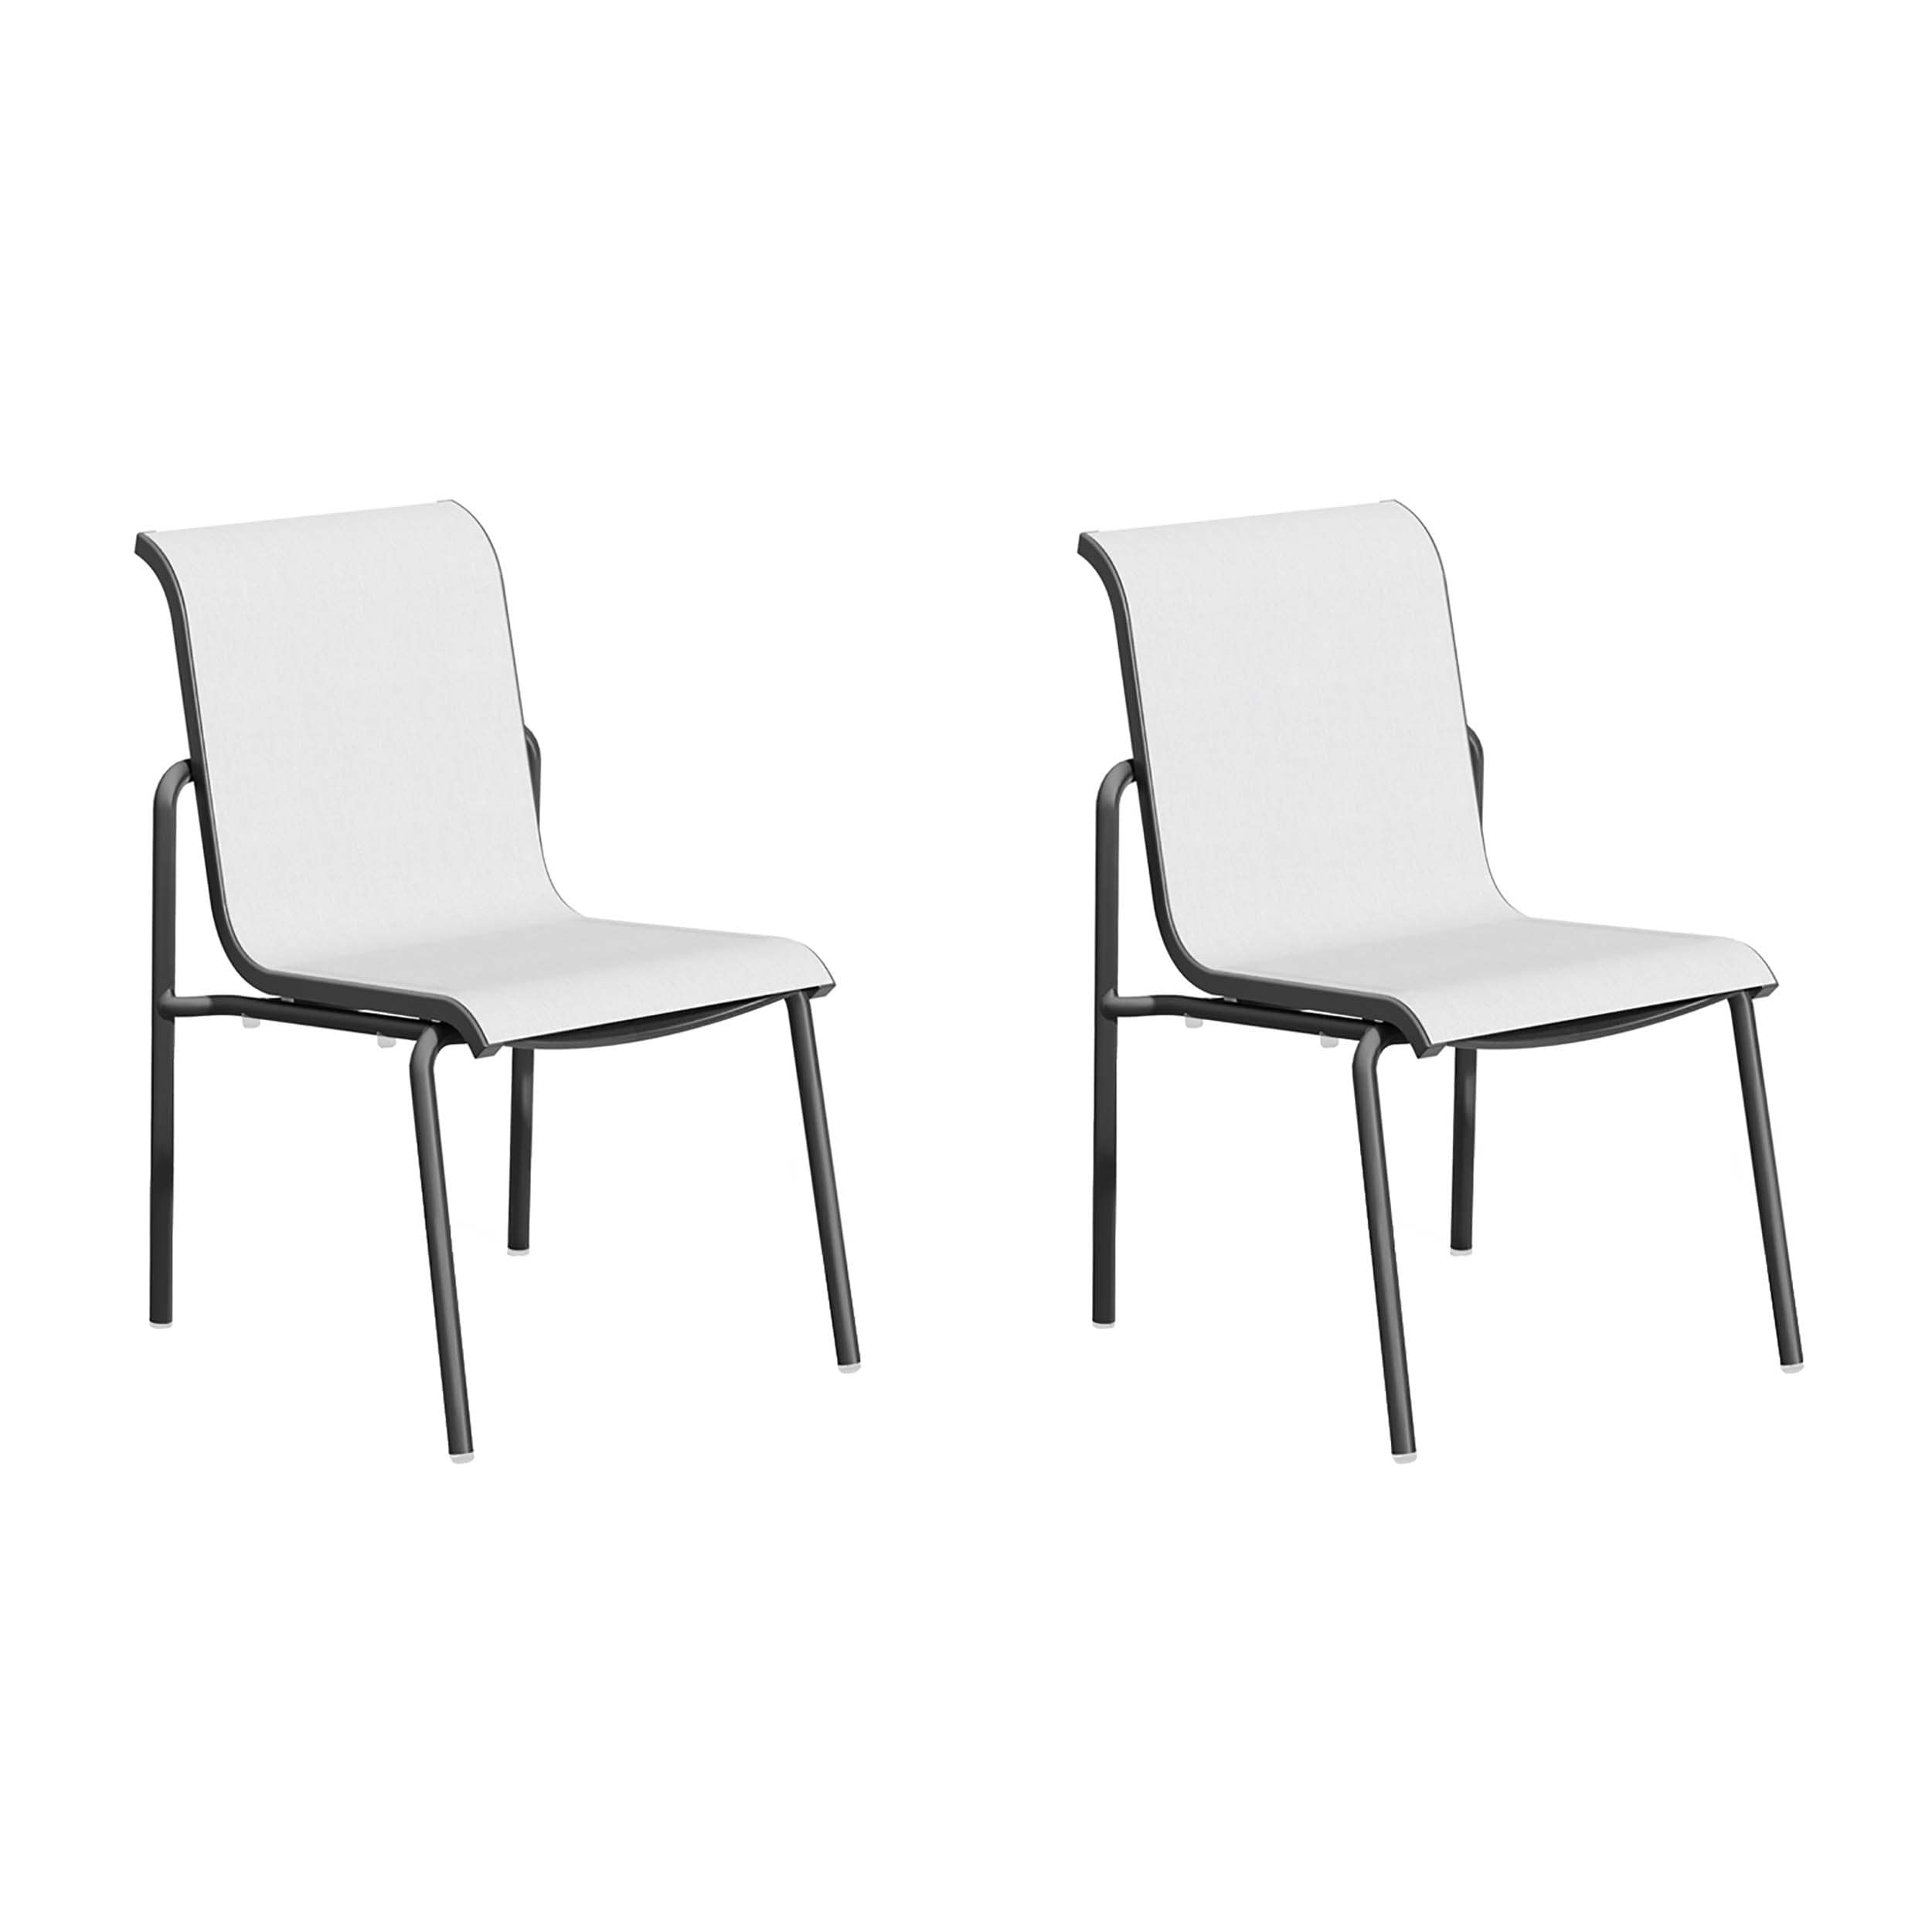 Orso Sling Side Chair - Fog Sling - Coated Aluminum Frame